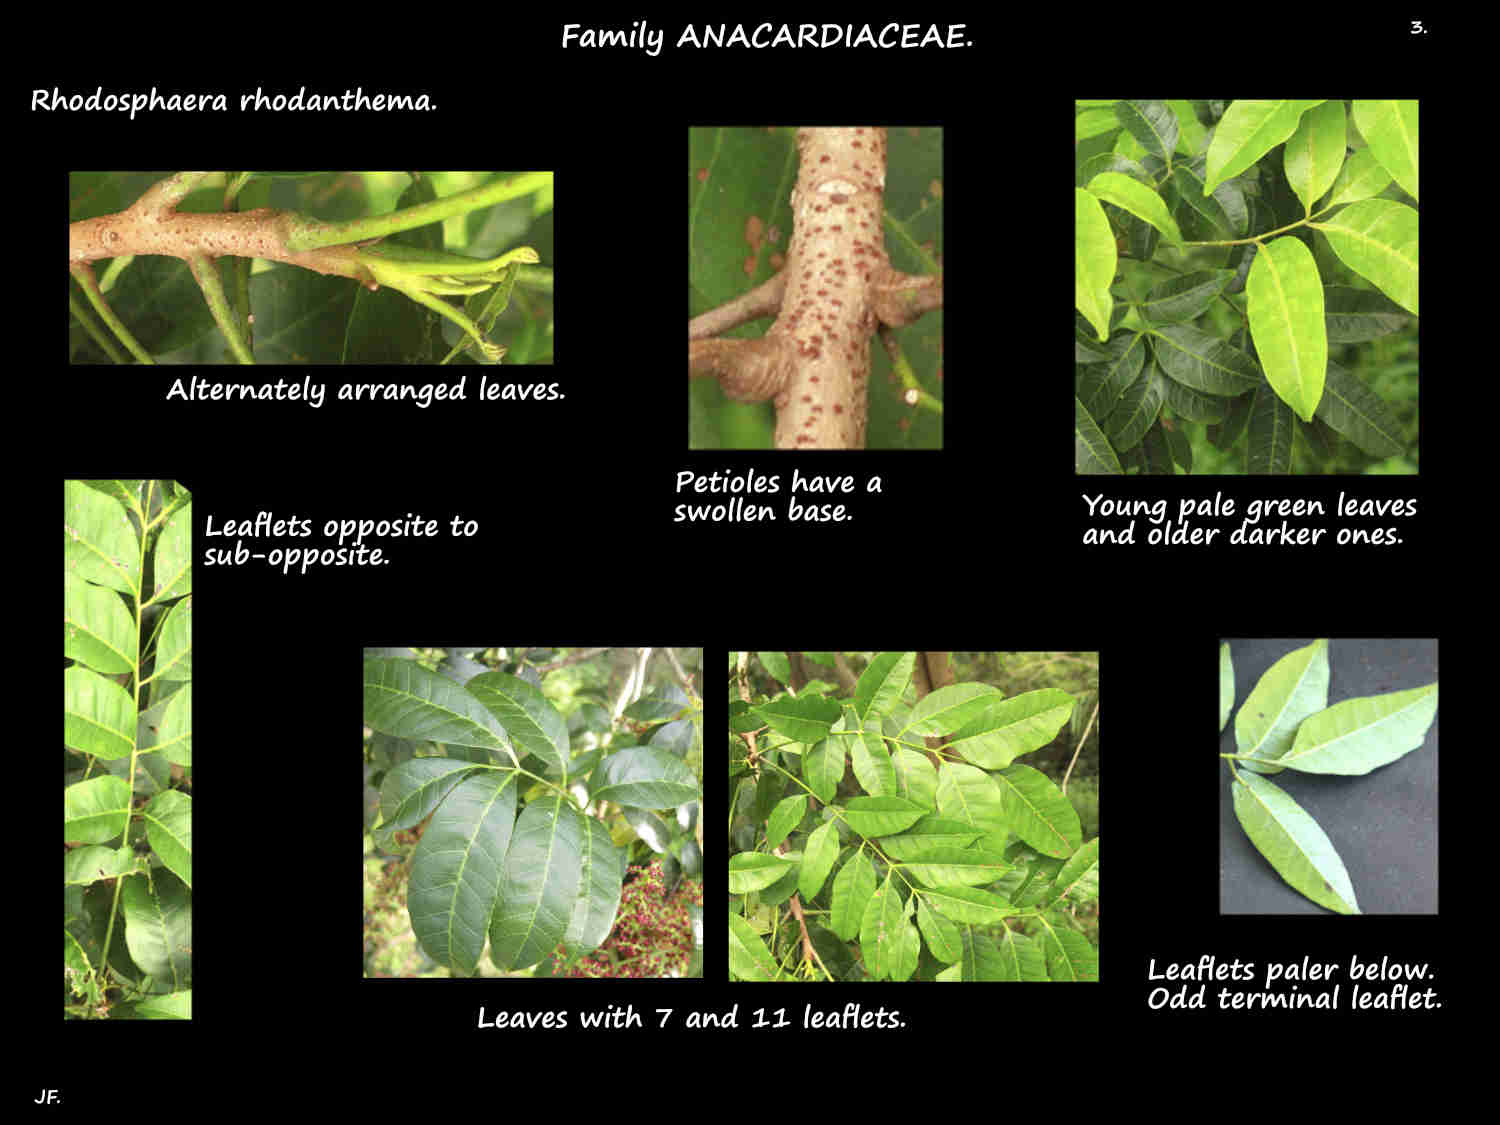 3 Rhodosphaera rhodanthema pinnate leaves